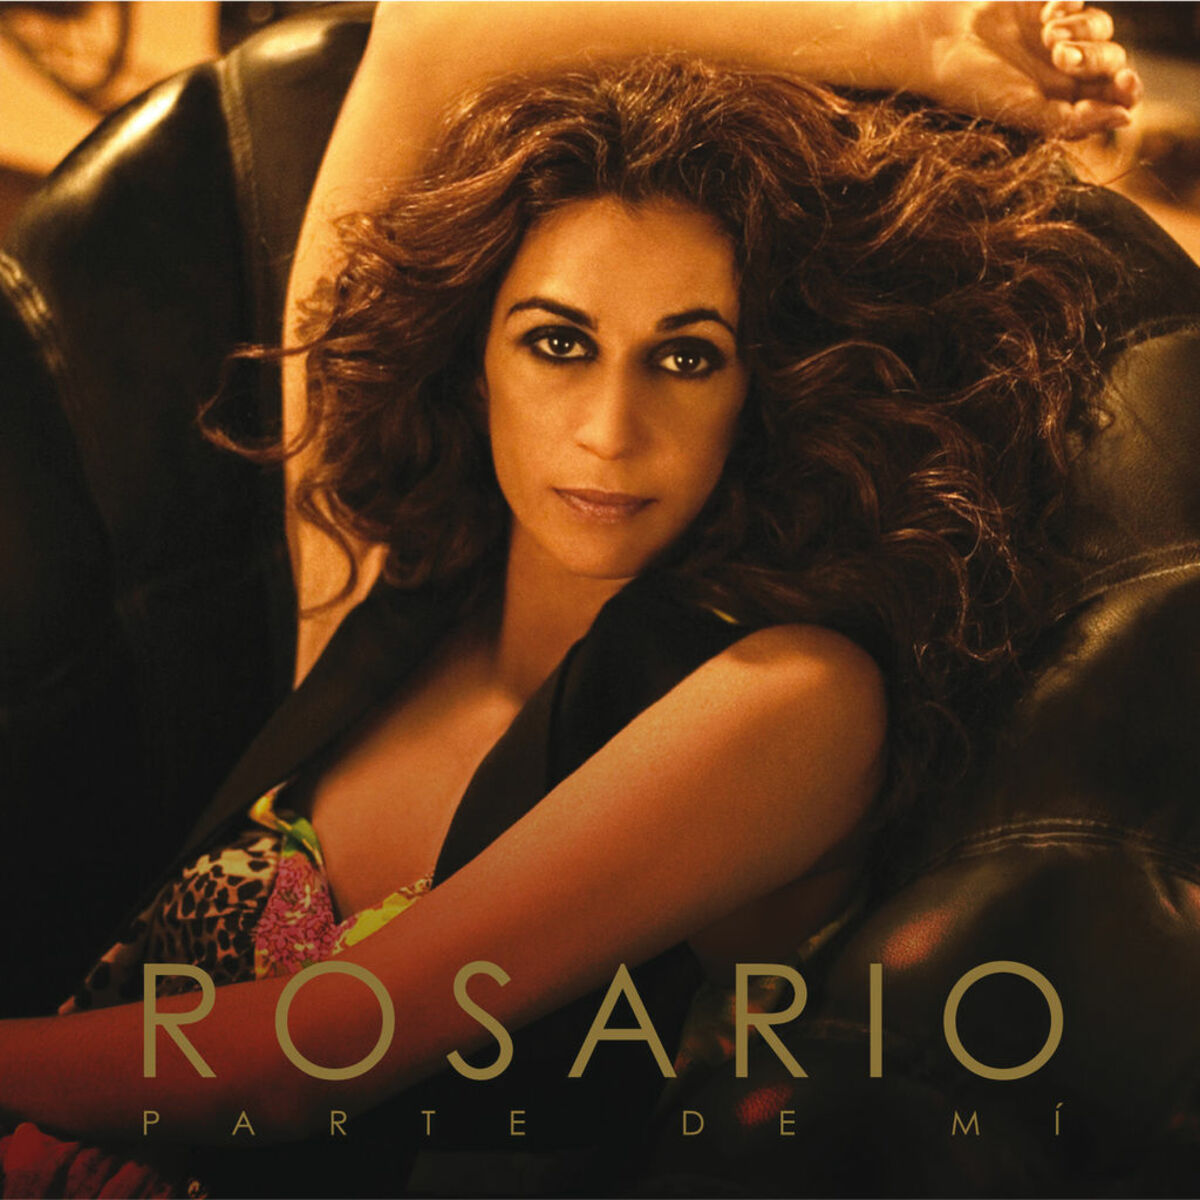 Rosario — No Dudaría cover artwork